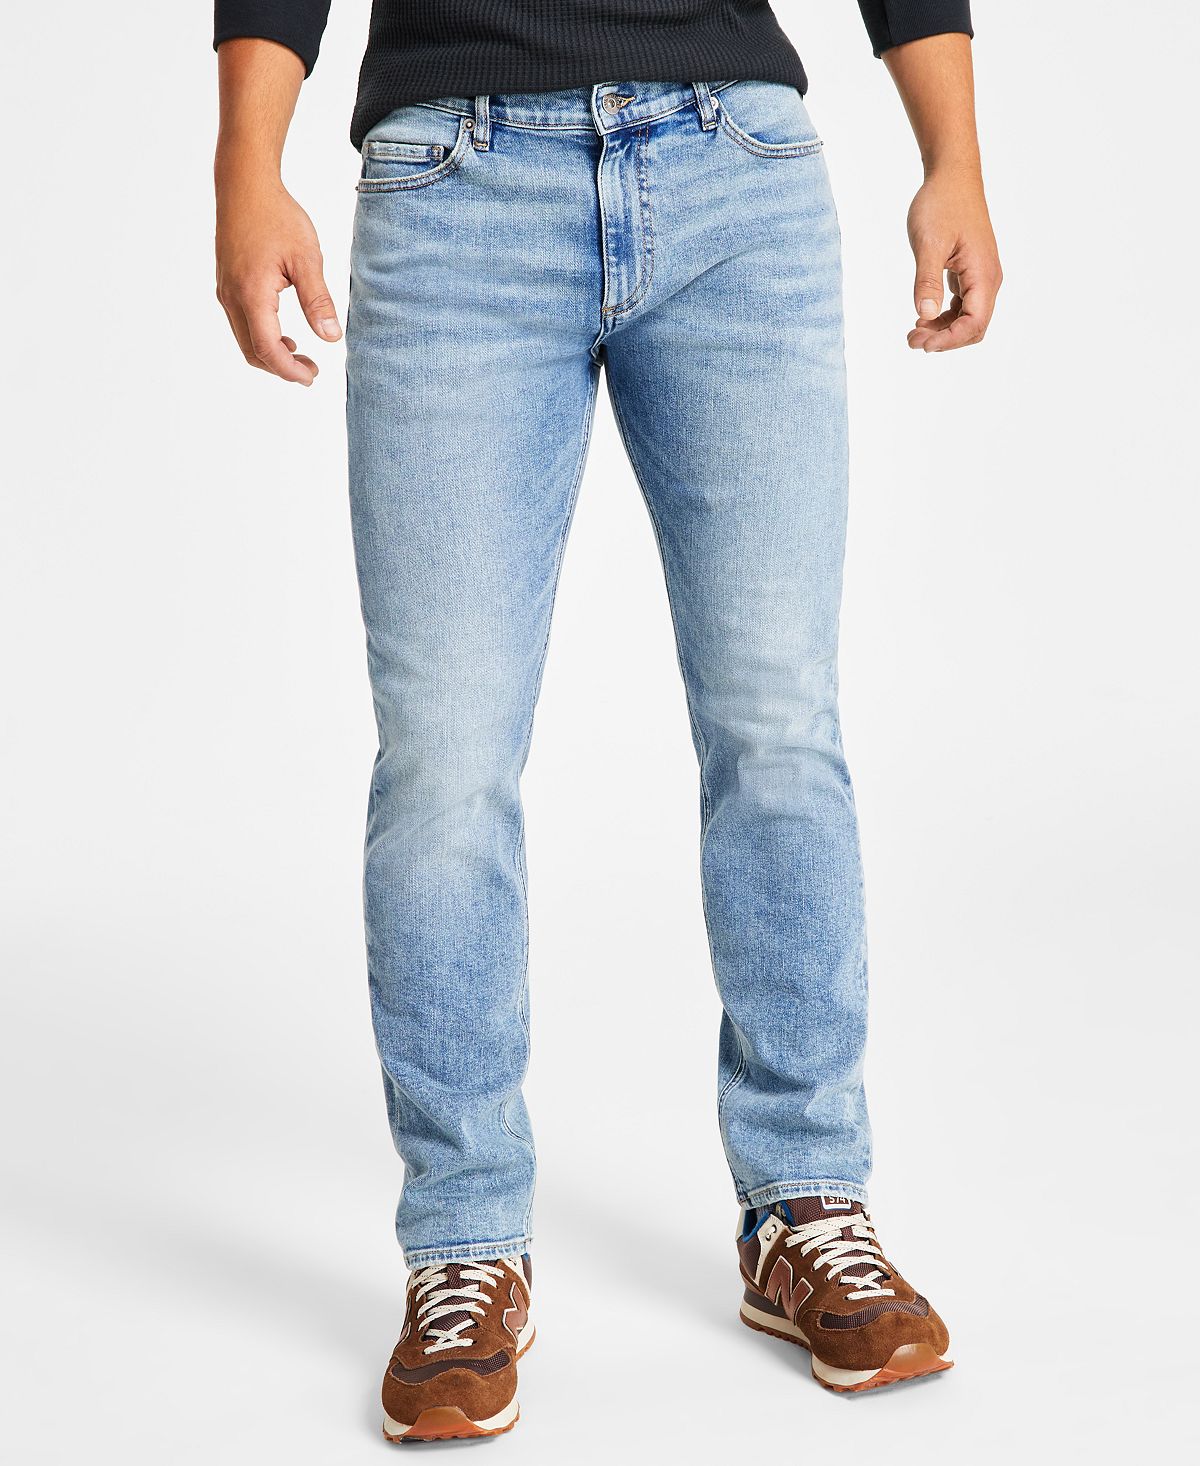 Мужские джинсы прямого кроя Durango Sun + Stone